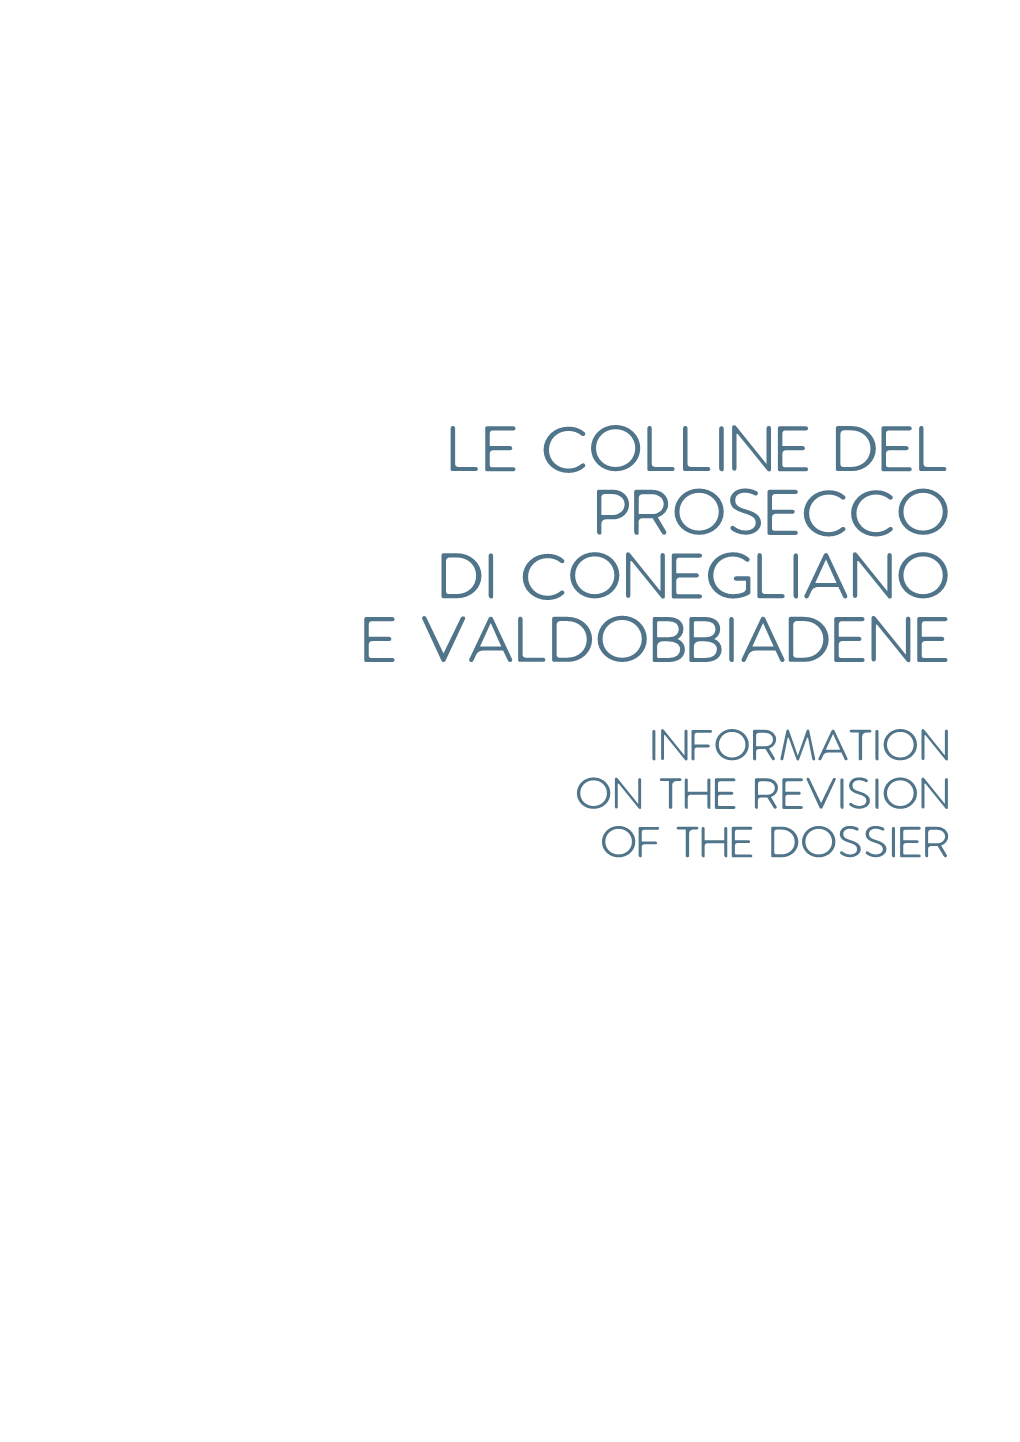 Le Colline Del Prosecco Di Conegliano E Valdobbiadene Information on the Revision of the Dossier Introduction